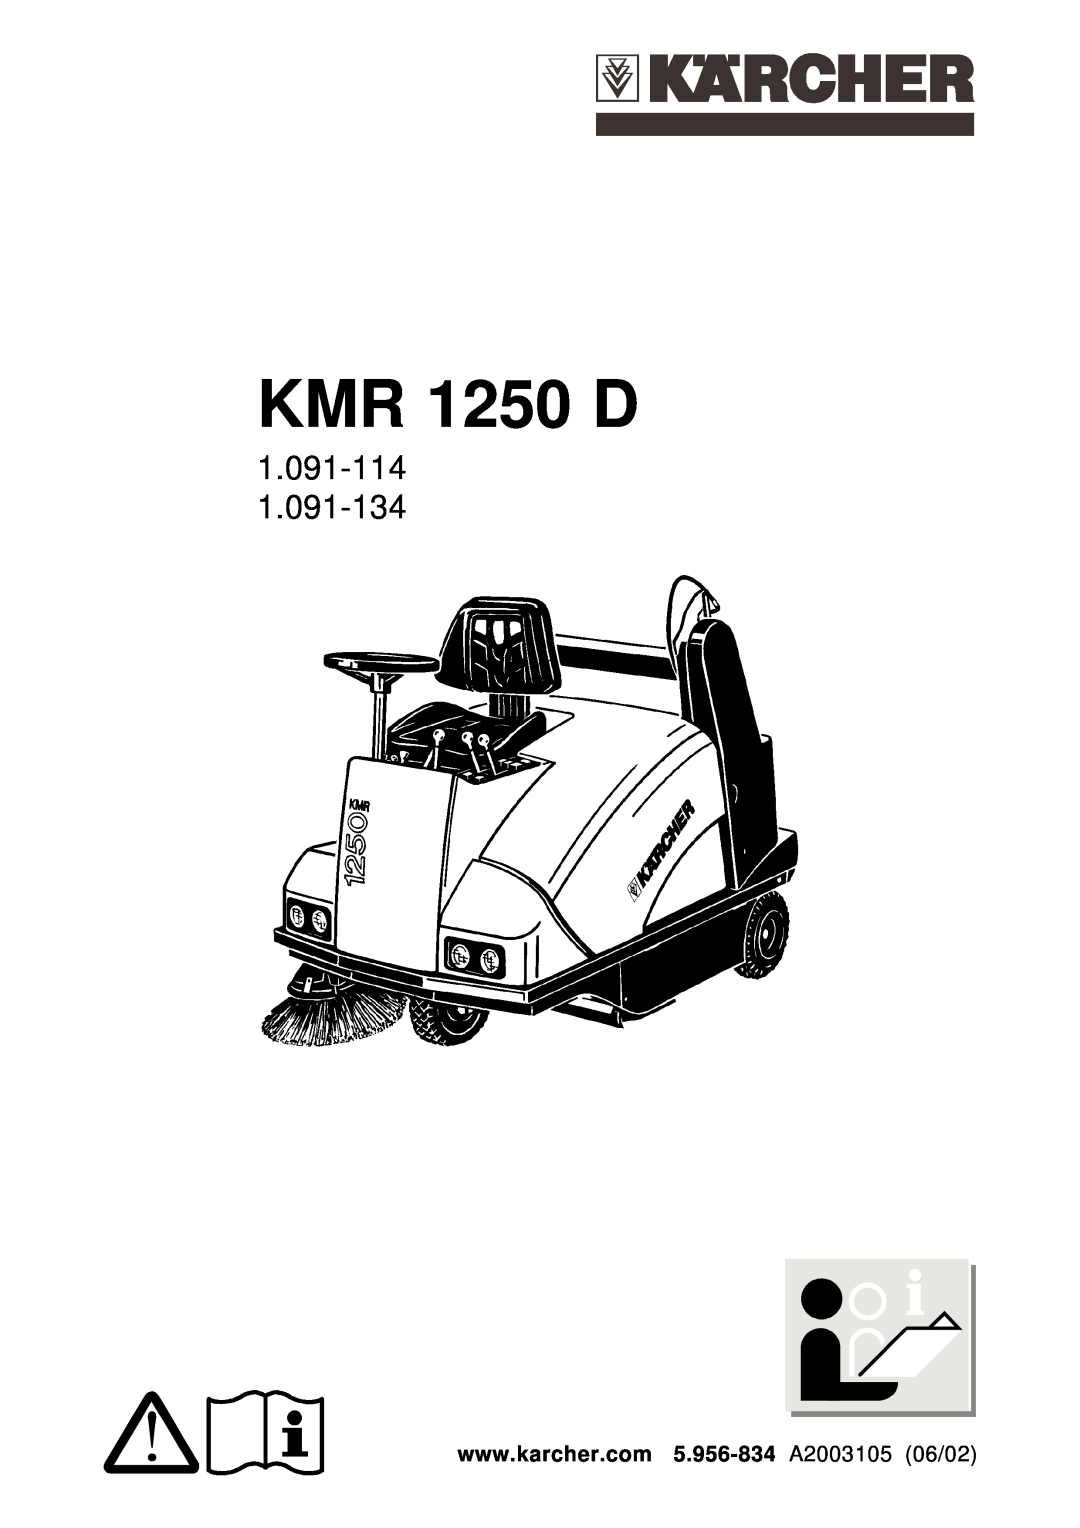 Karcher KMR 1250 D manual 1.091-114 